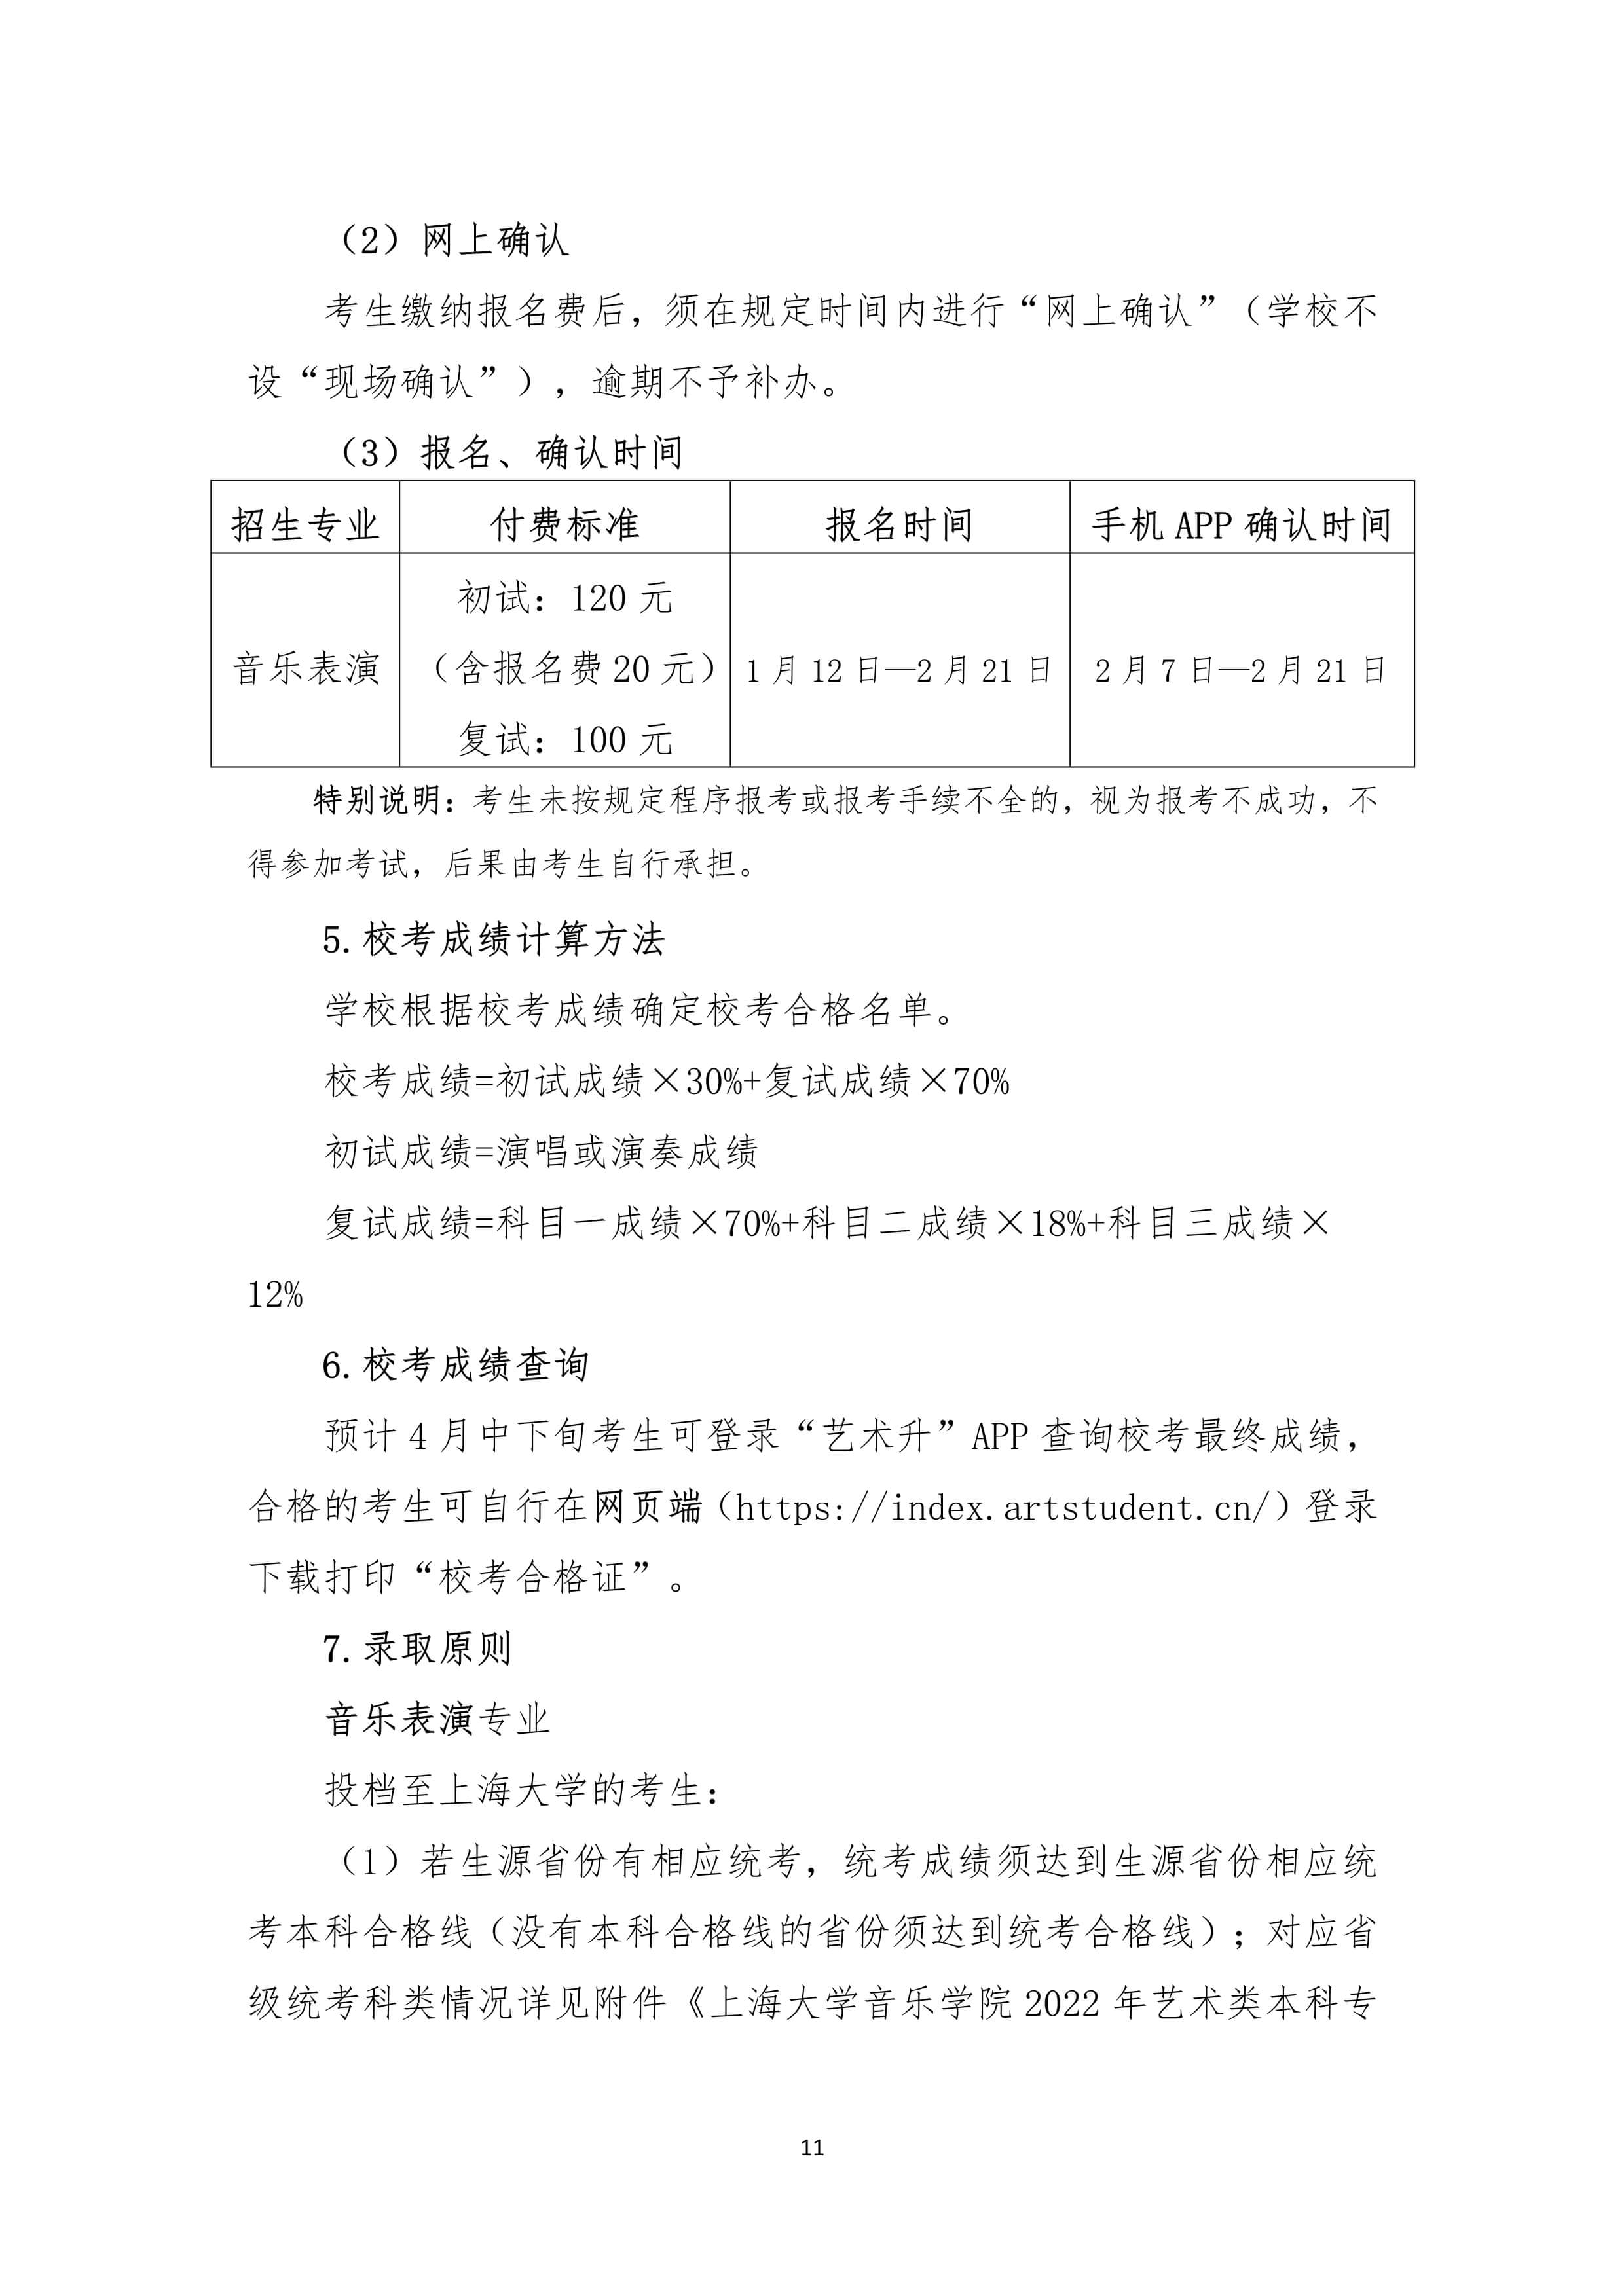 2022年上海大学音乐学院音乐类本科专业招生简章、招生章程、招生计划及省份、学校地址、录取原则